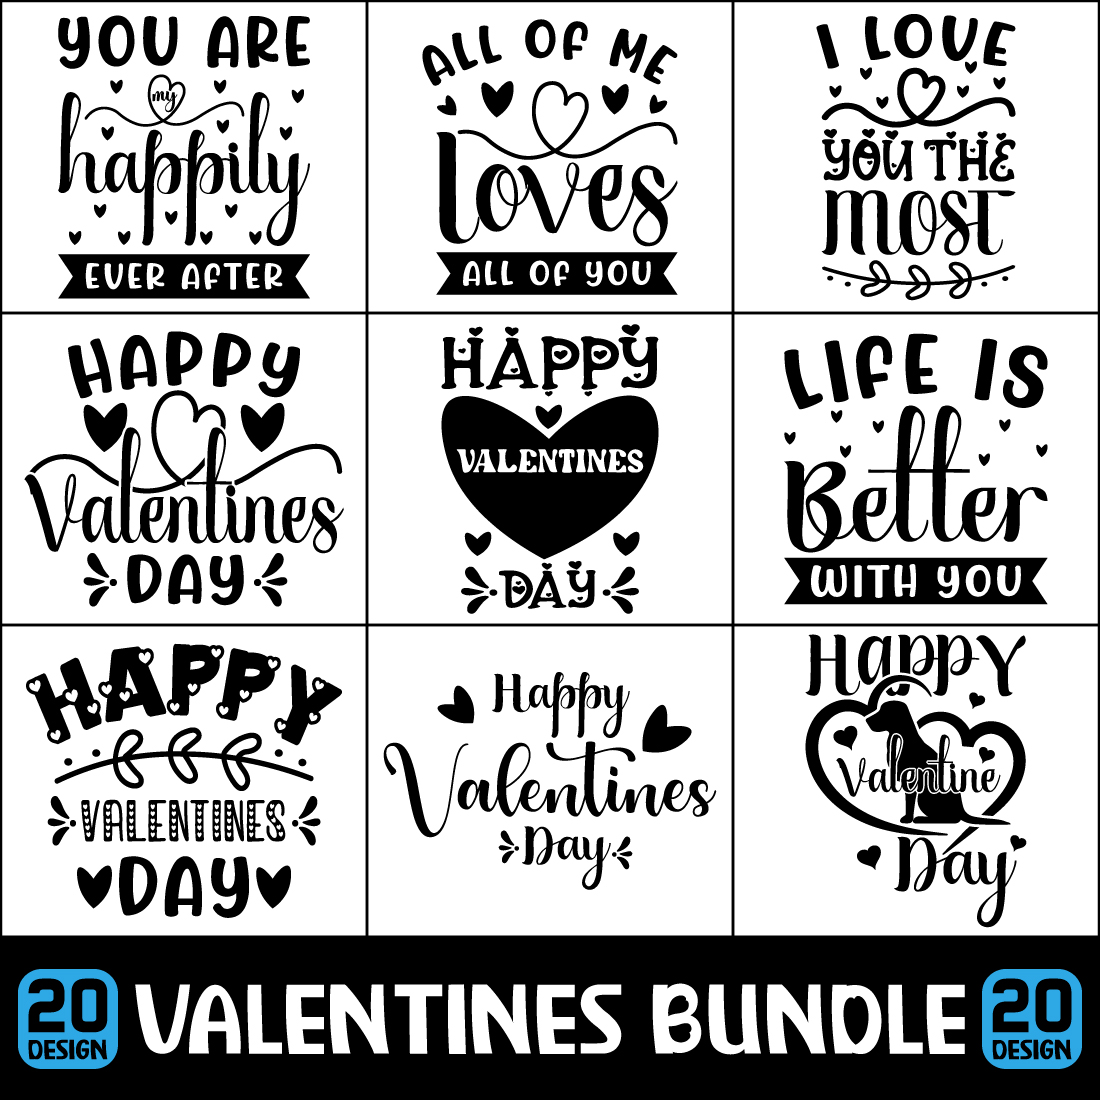 Valentines Day SVG Design Bundle Cover.